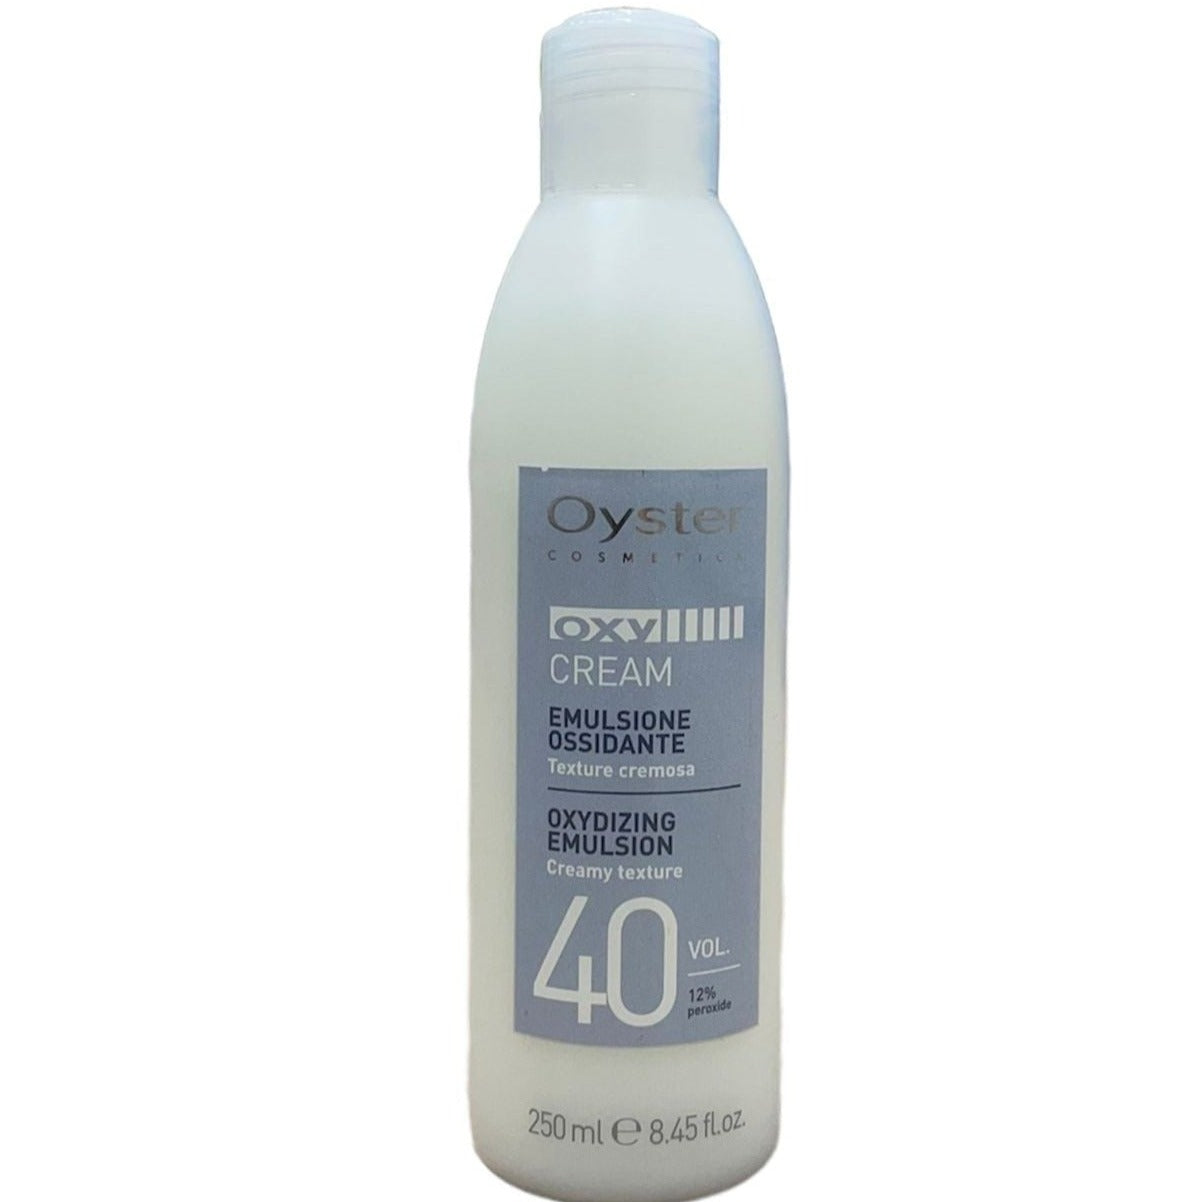 Oyster Emulsione Ossidante 40 Vol. (12%) Oxy Cream